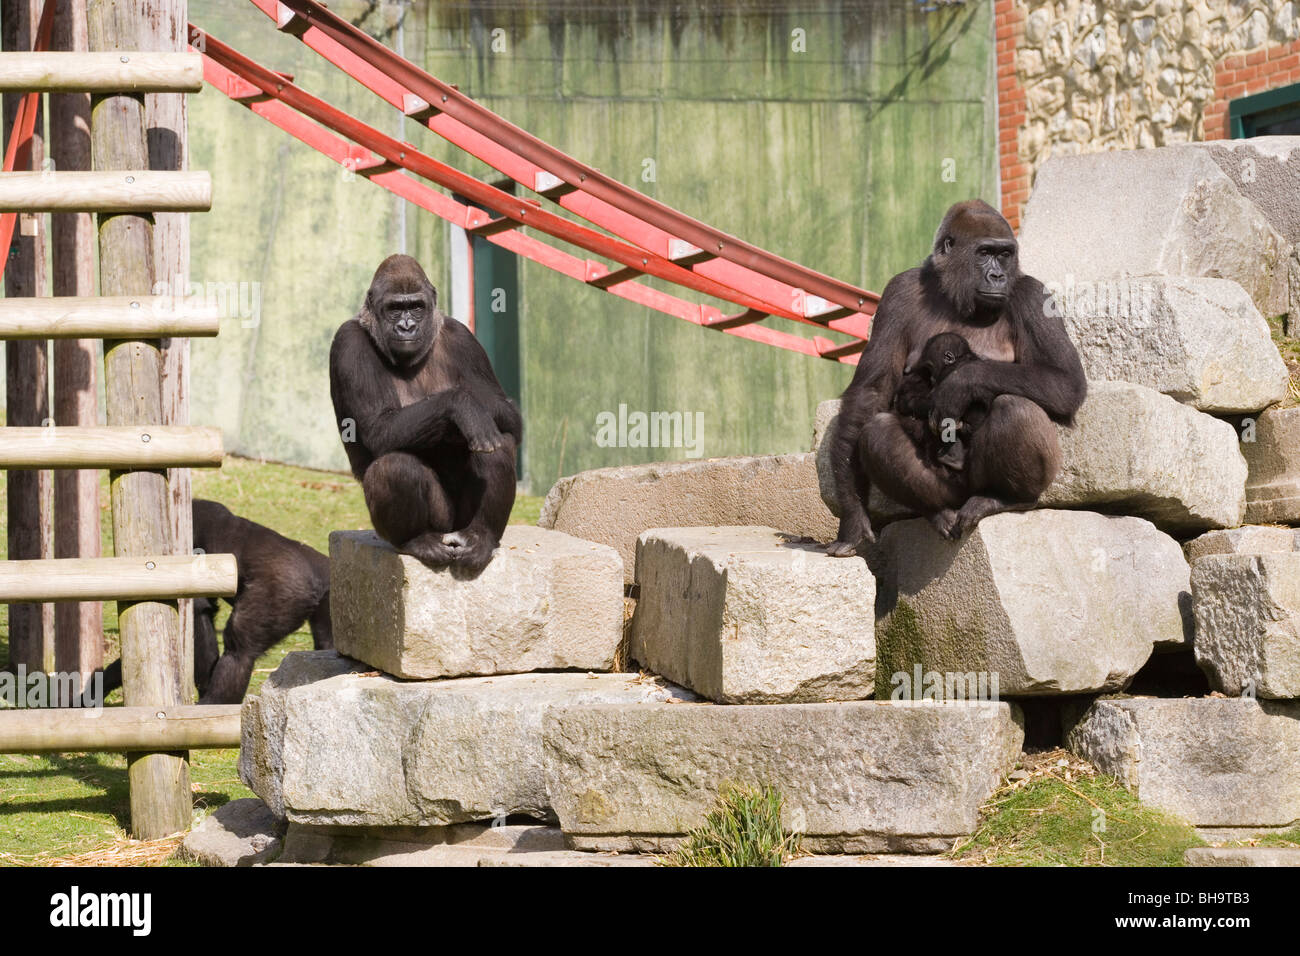 Westliche Gorillas (Gorilla Gorilla). Zoo-Tiere inmitten Möbelobjekten von "environmental Enrichment". Stockfoto